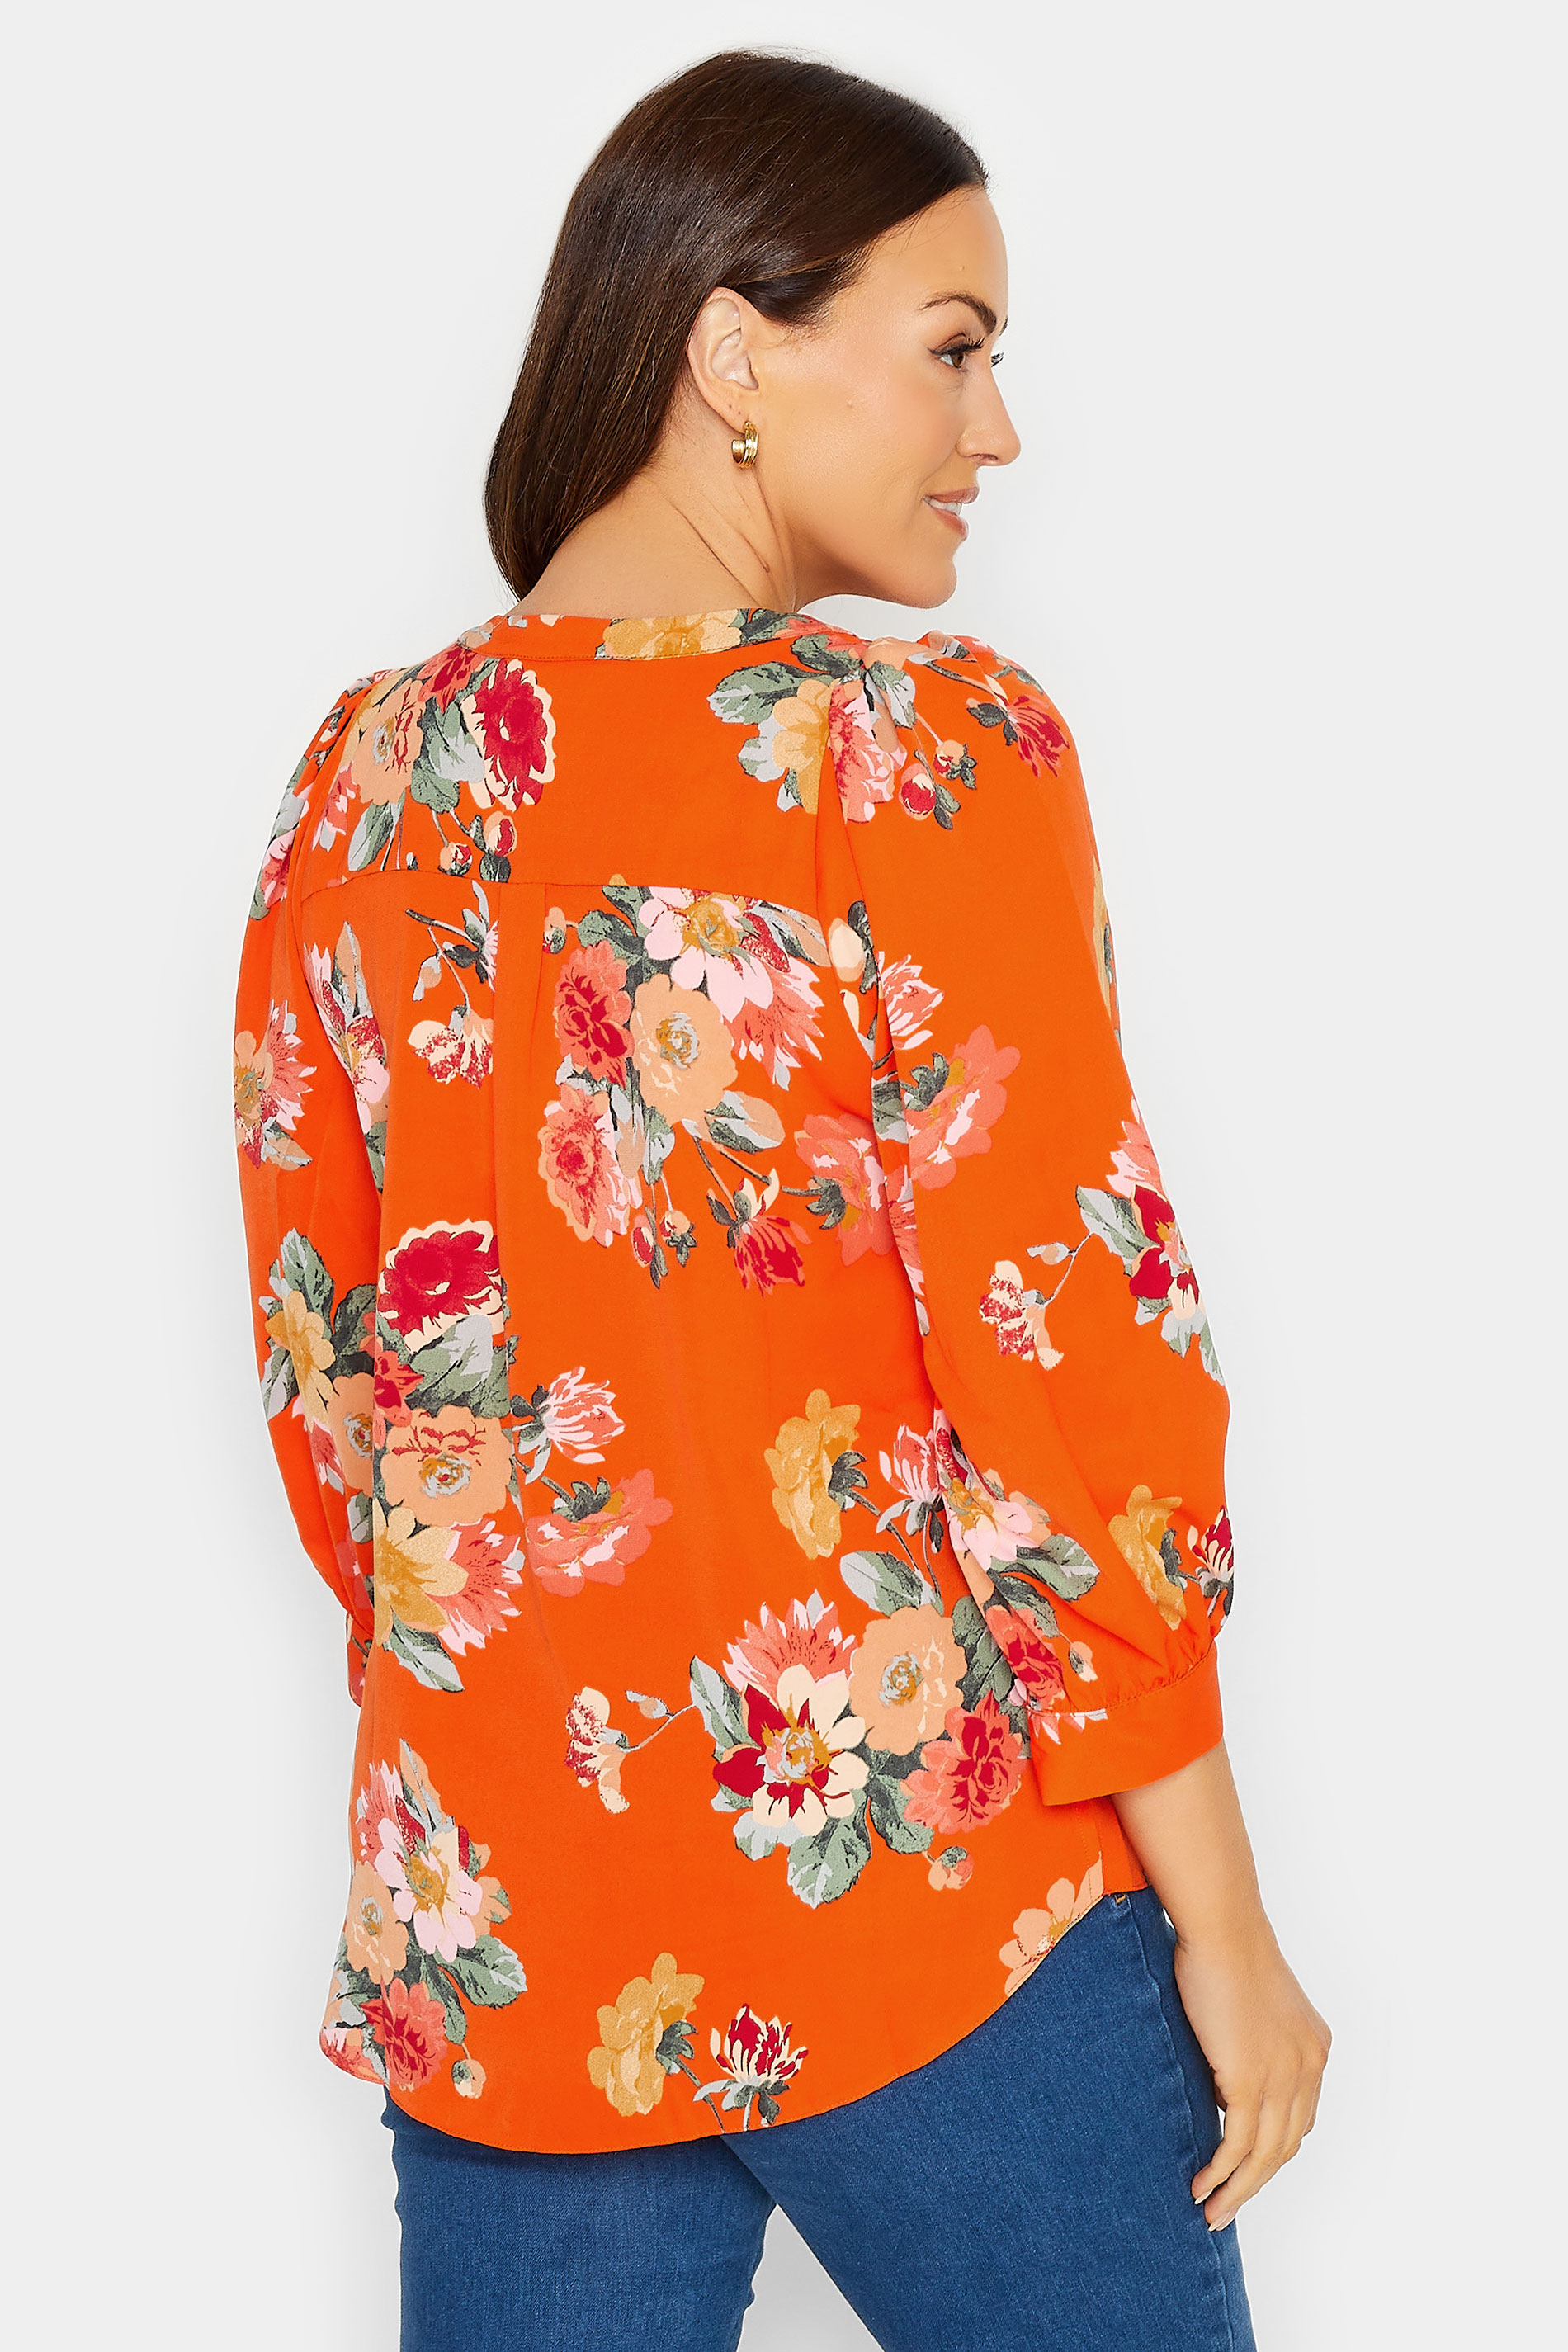 M&Co Orange Floral 3/4 Sleeve Blouse | M&Co 3